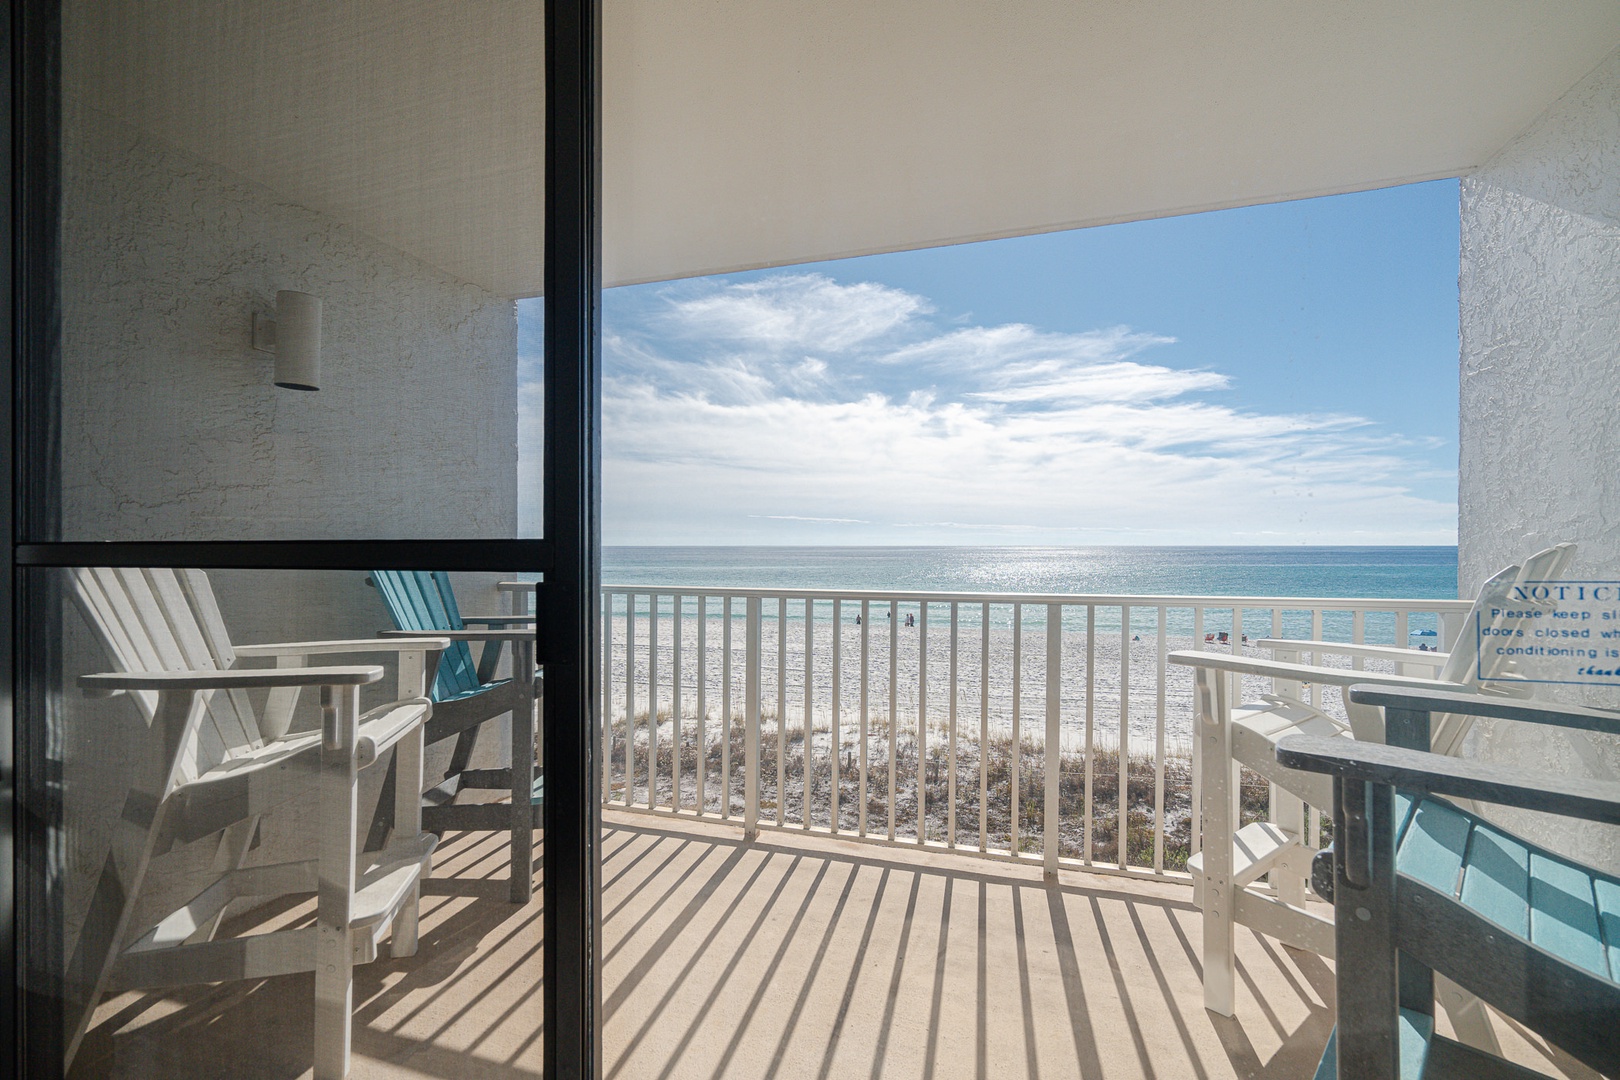 Enjoy the ocean air on the beachfront balcony